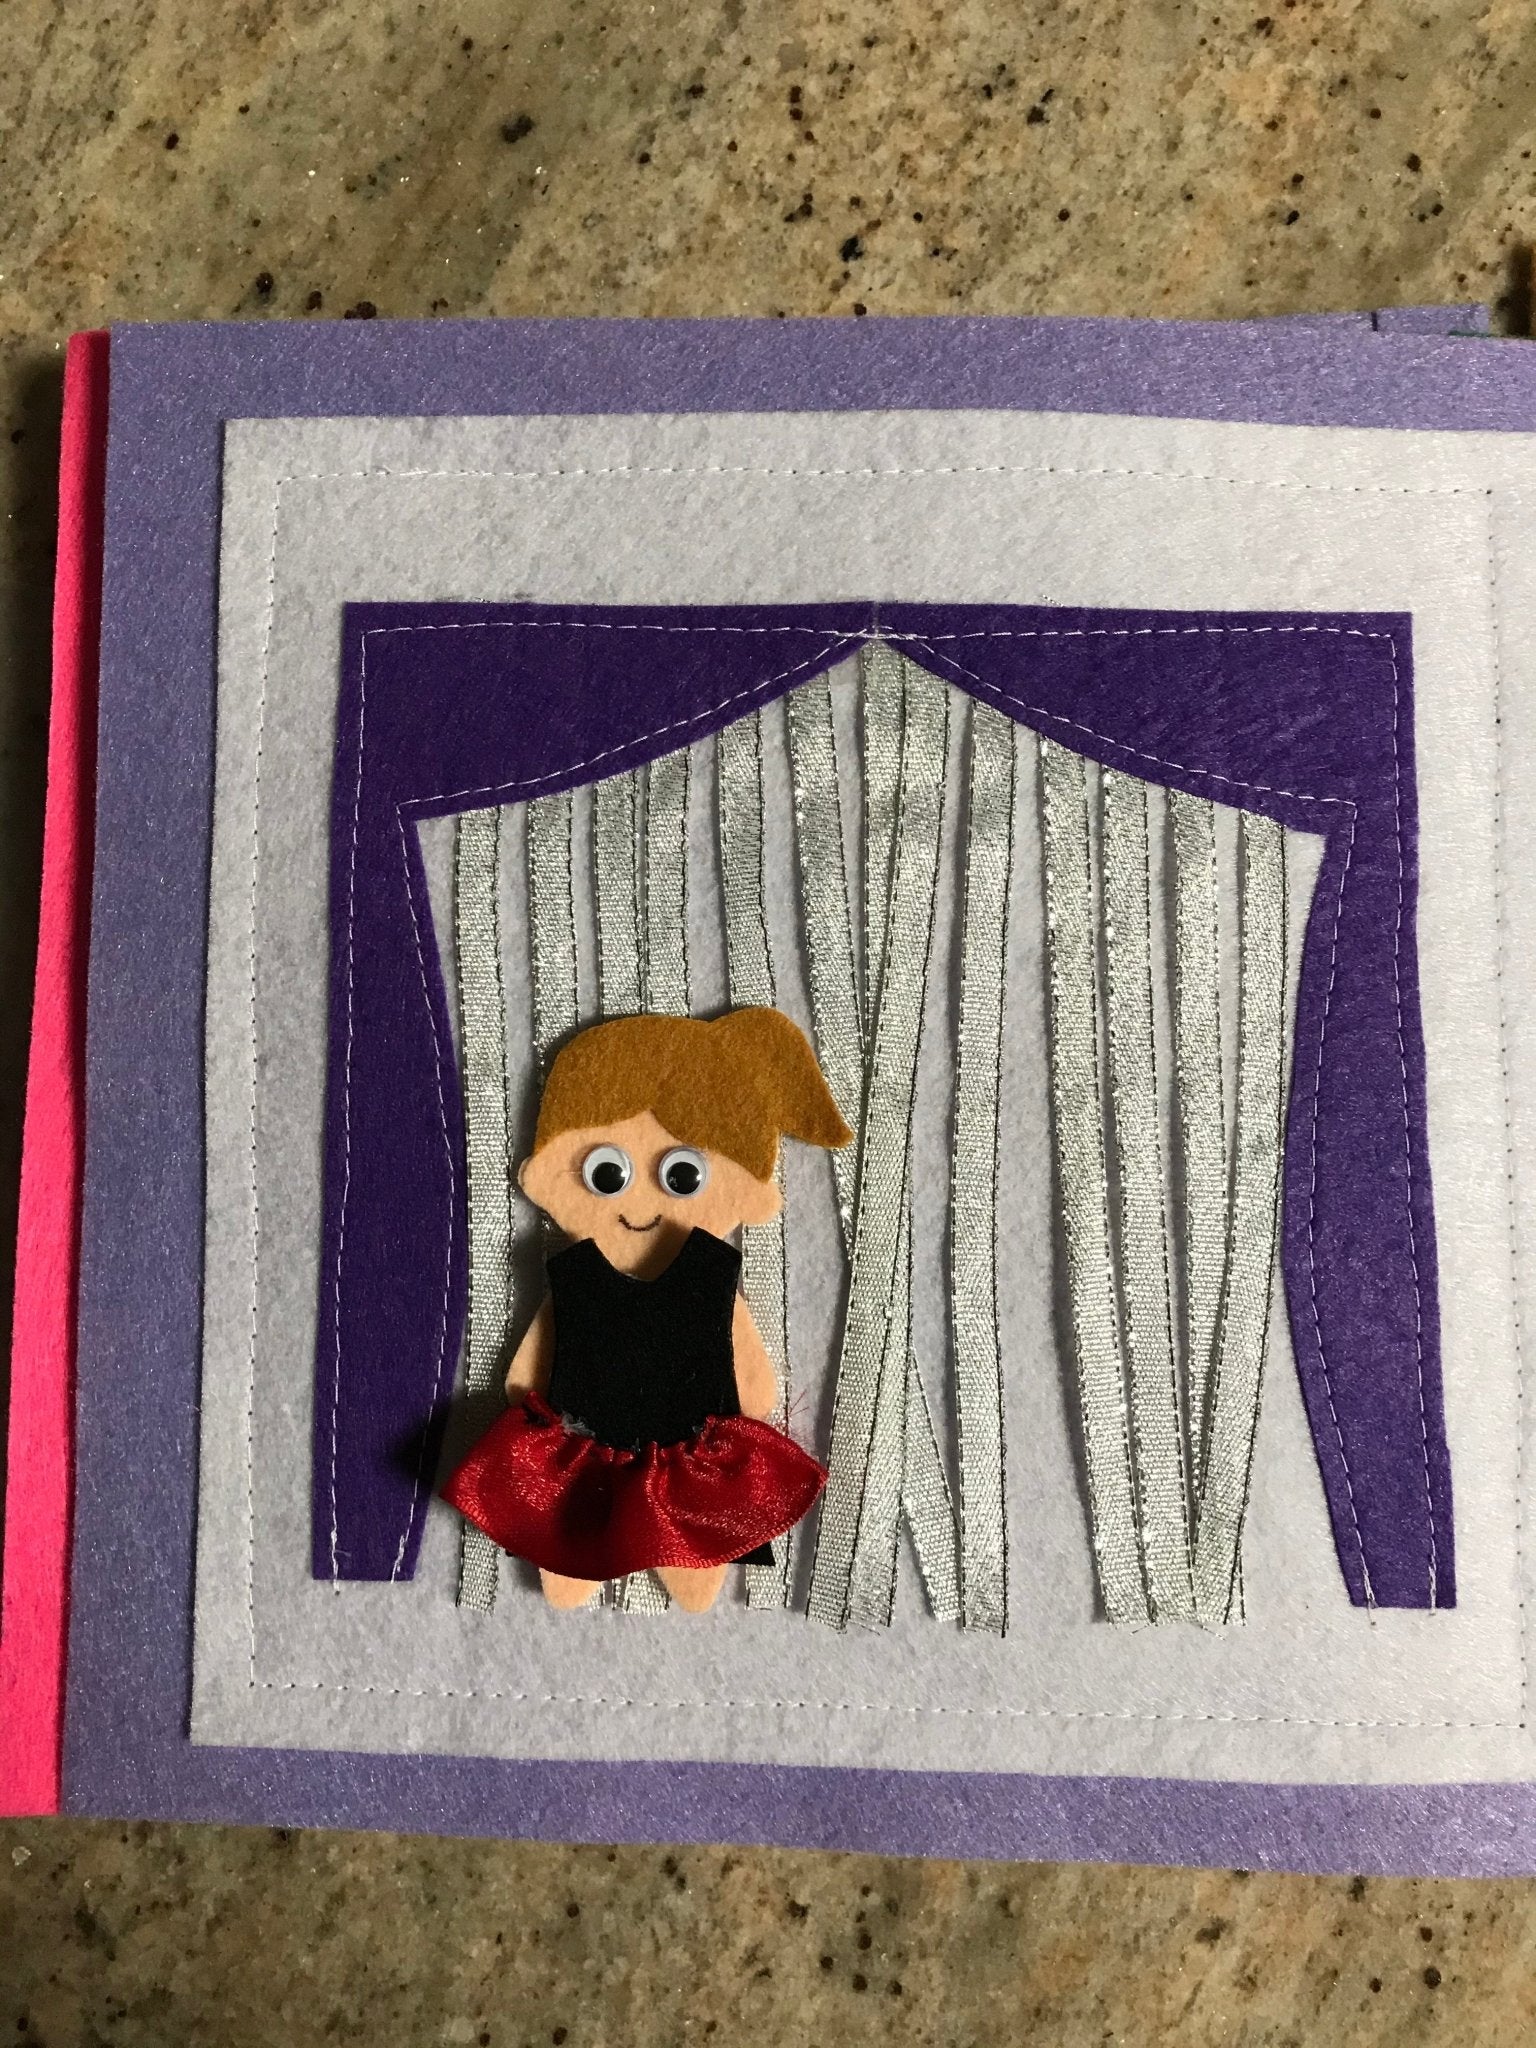 Quiet Book DIY kits – LittleBean's Toy Chest